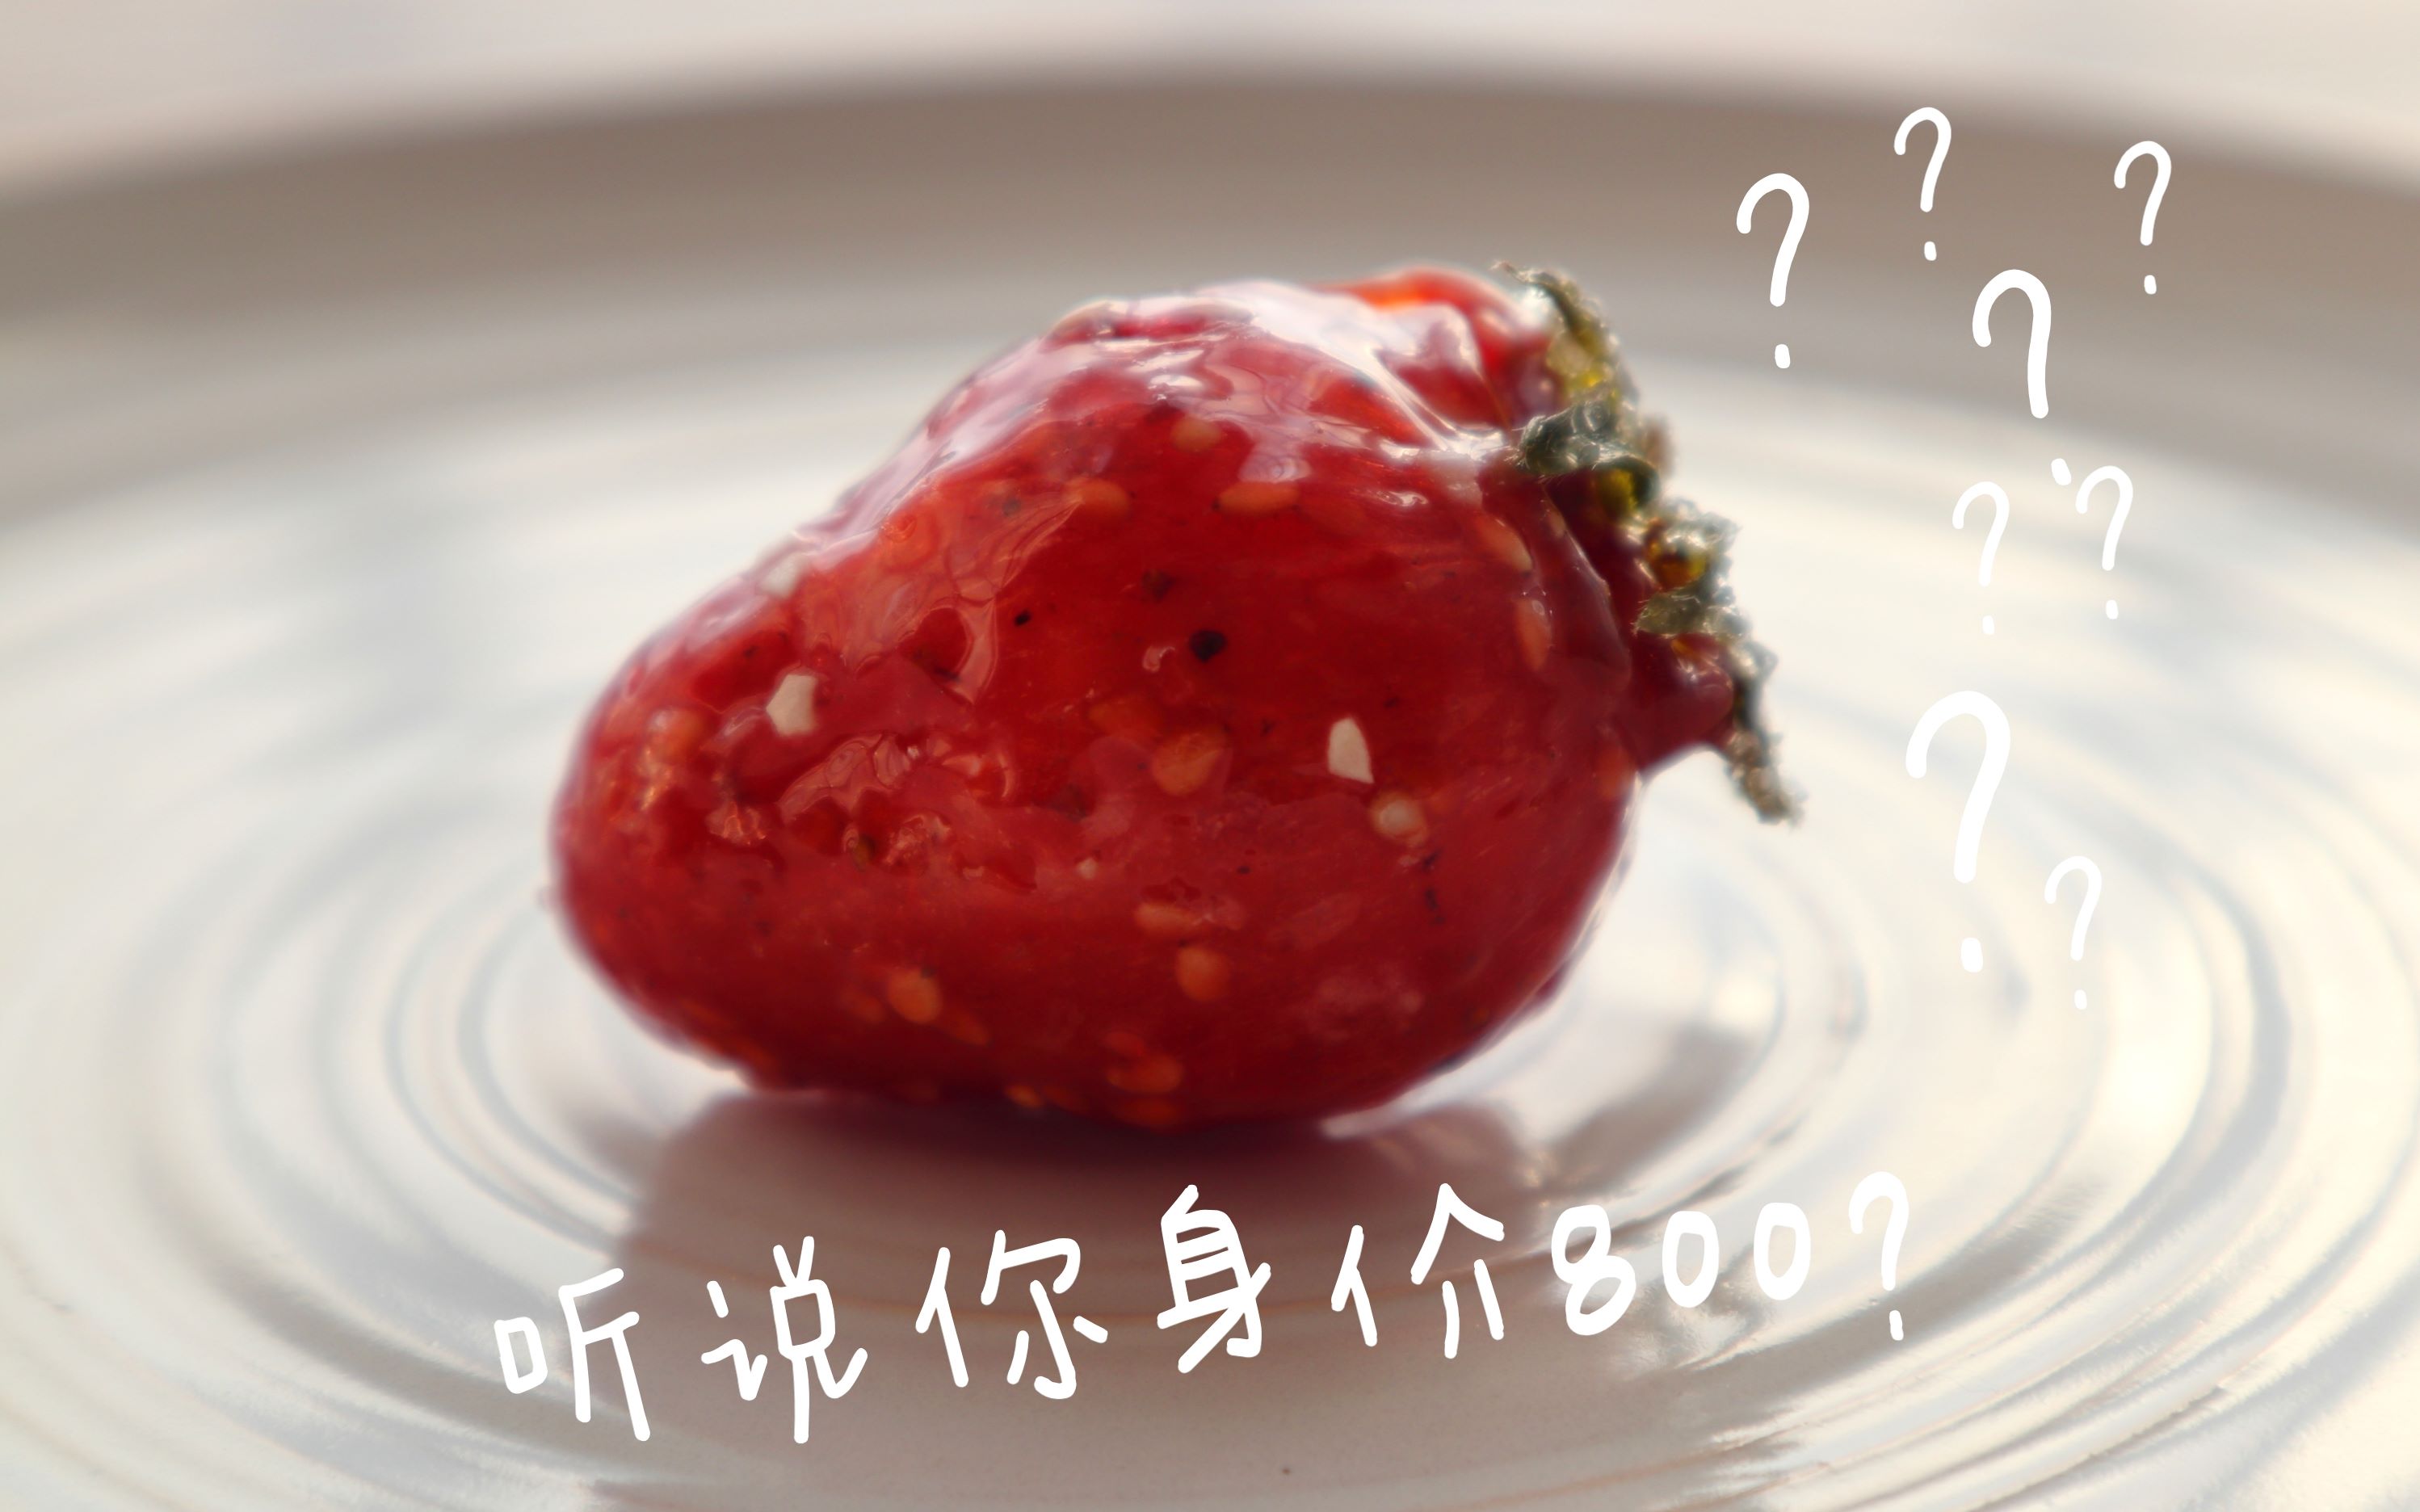 传说一颗800的龙吟草莓究竟是什么神仙小可爱！！！